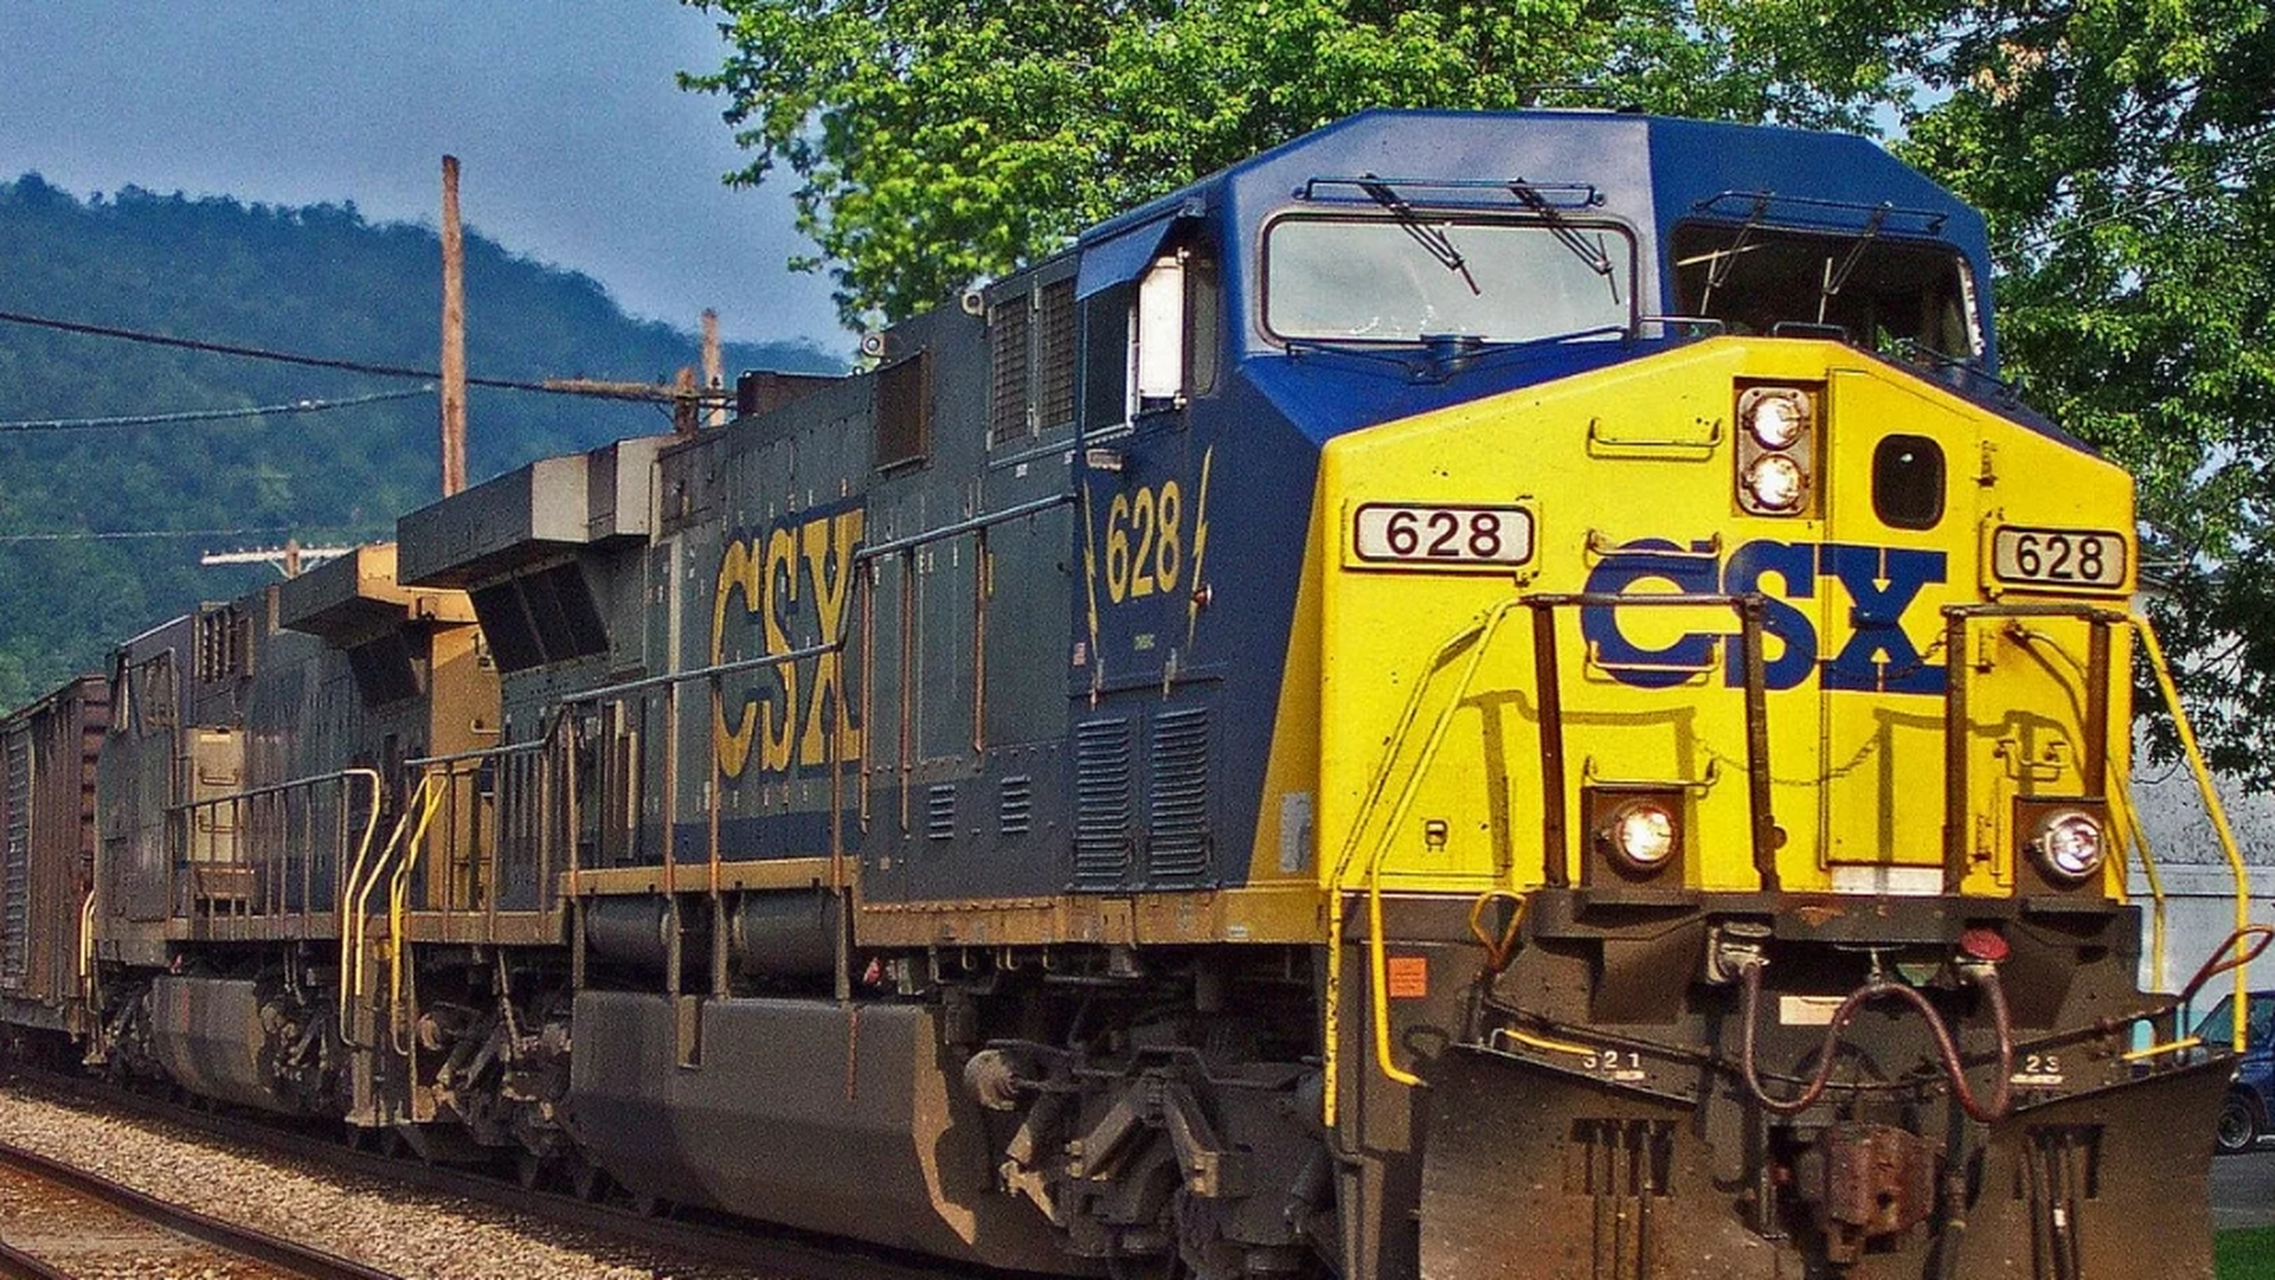 美国csx8888列车图片